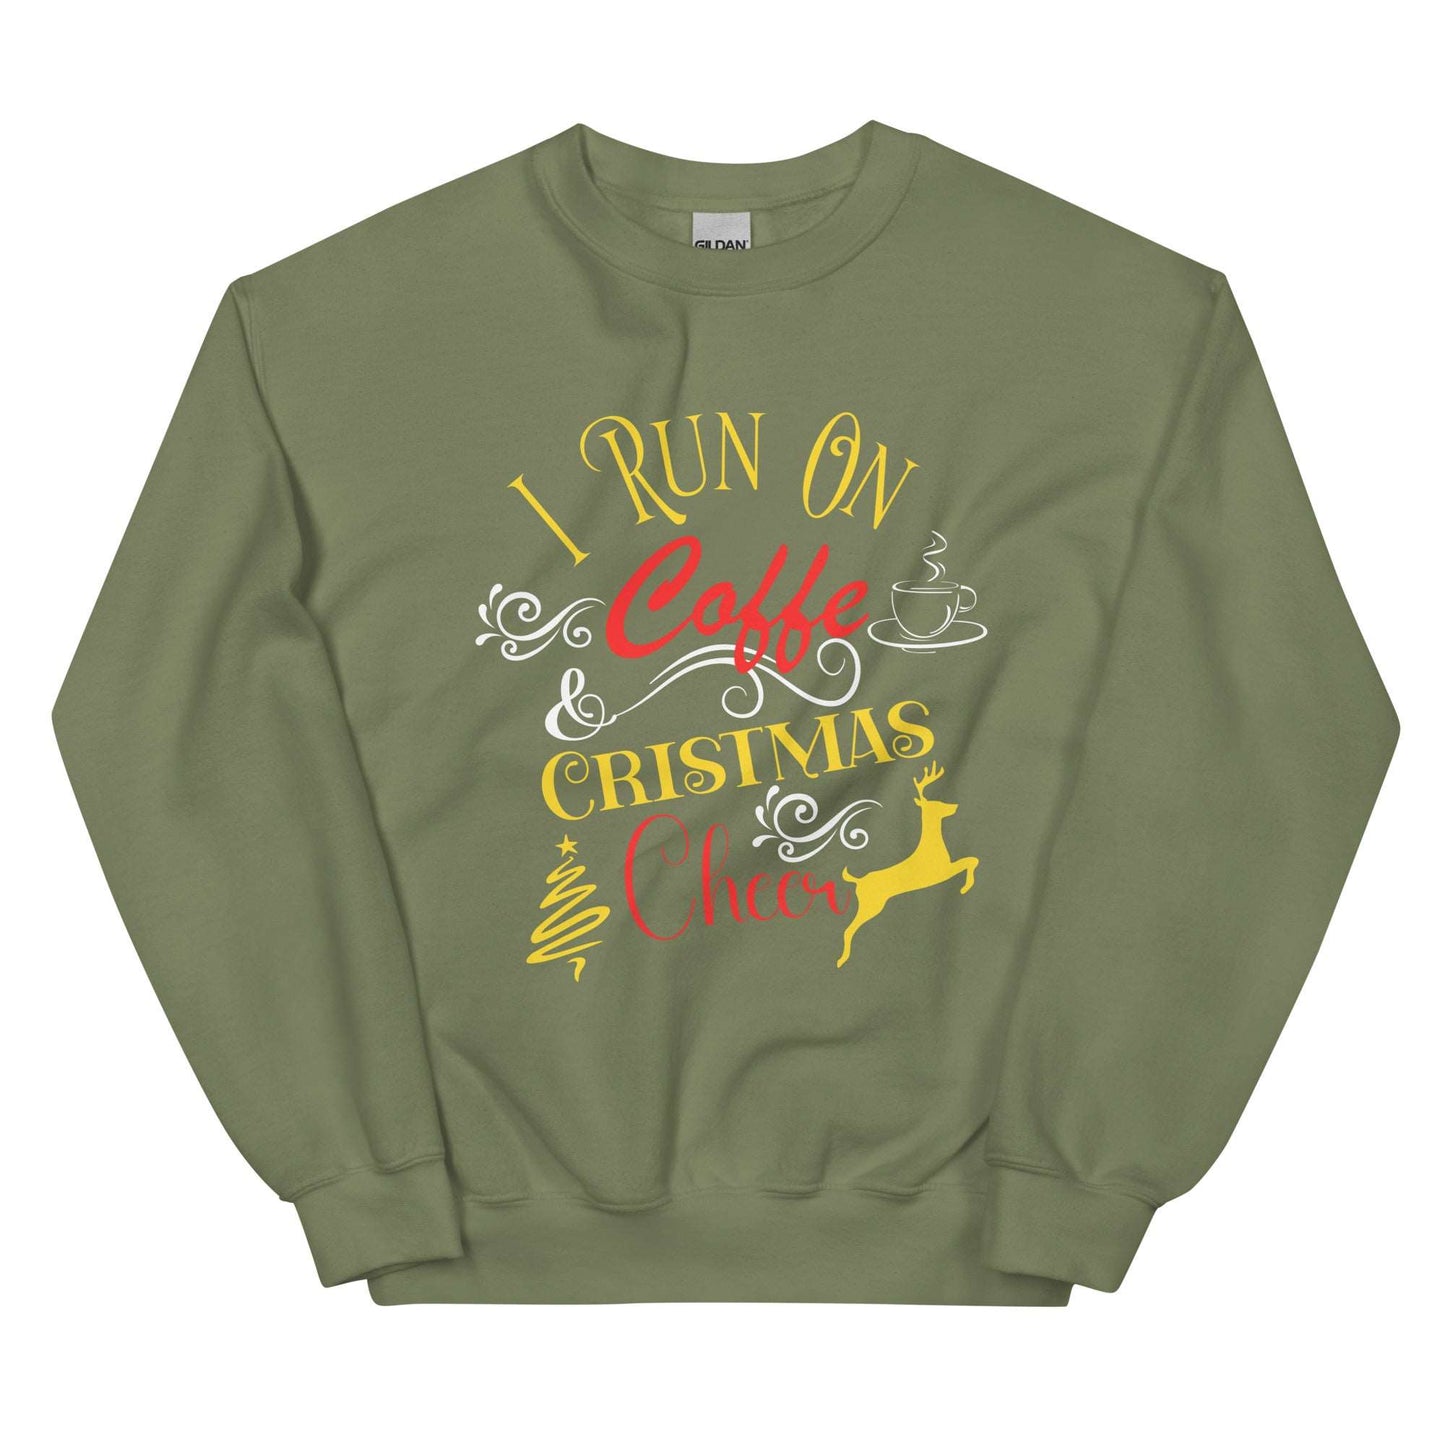 Christmas Cheer - Unisex Sweatshirt